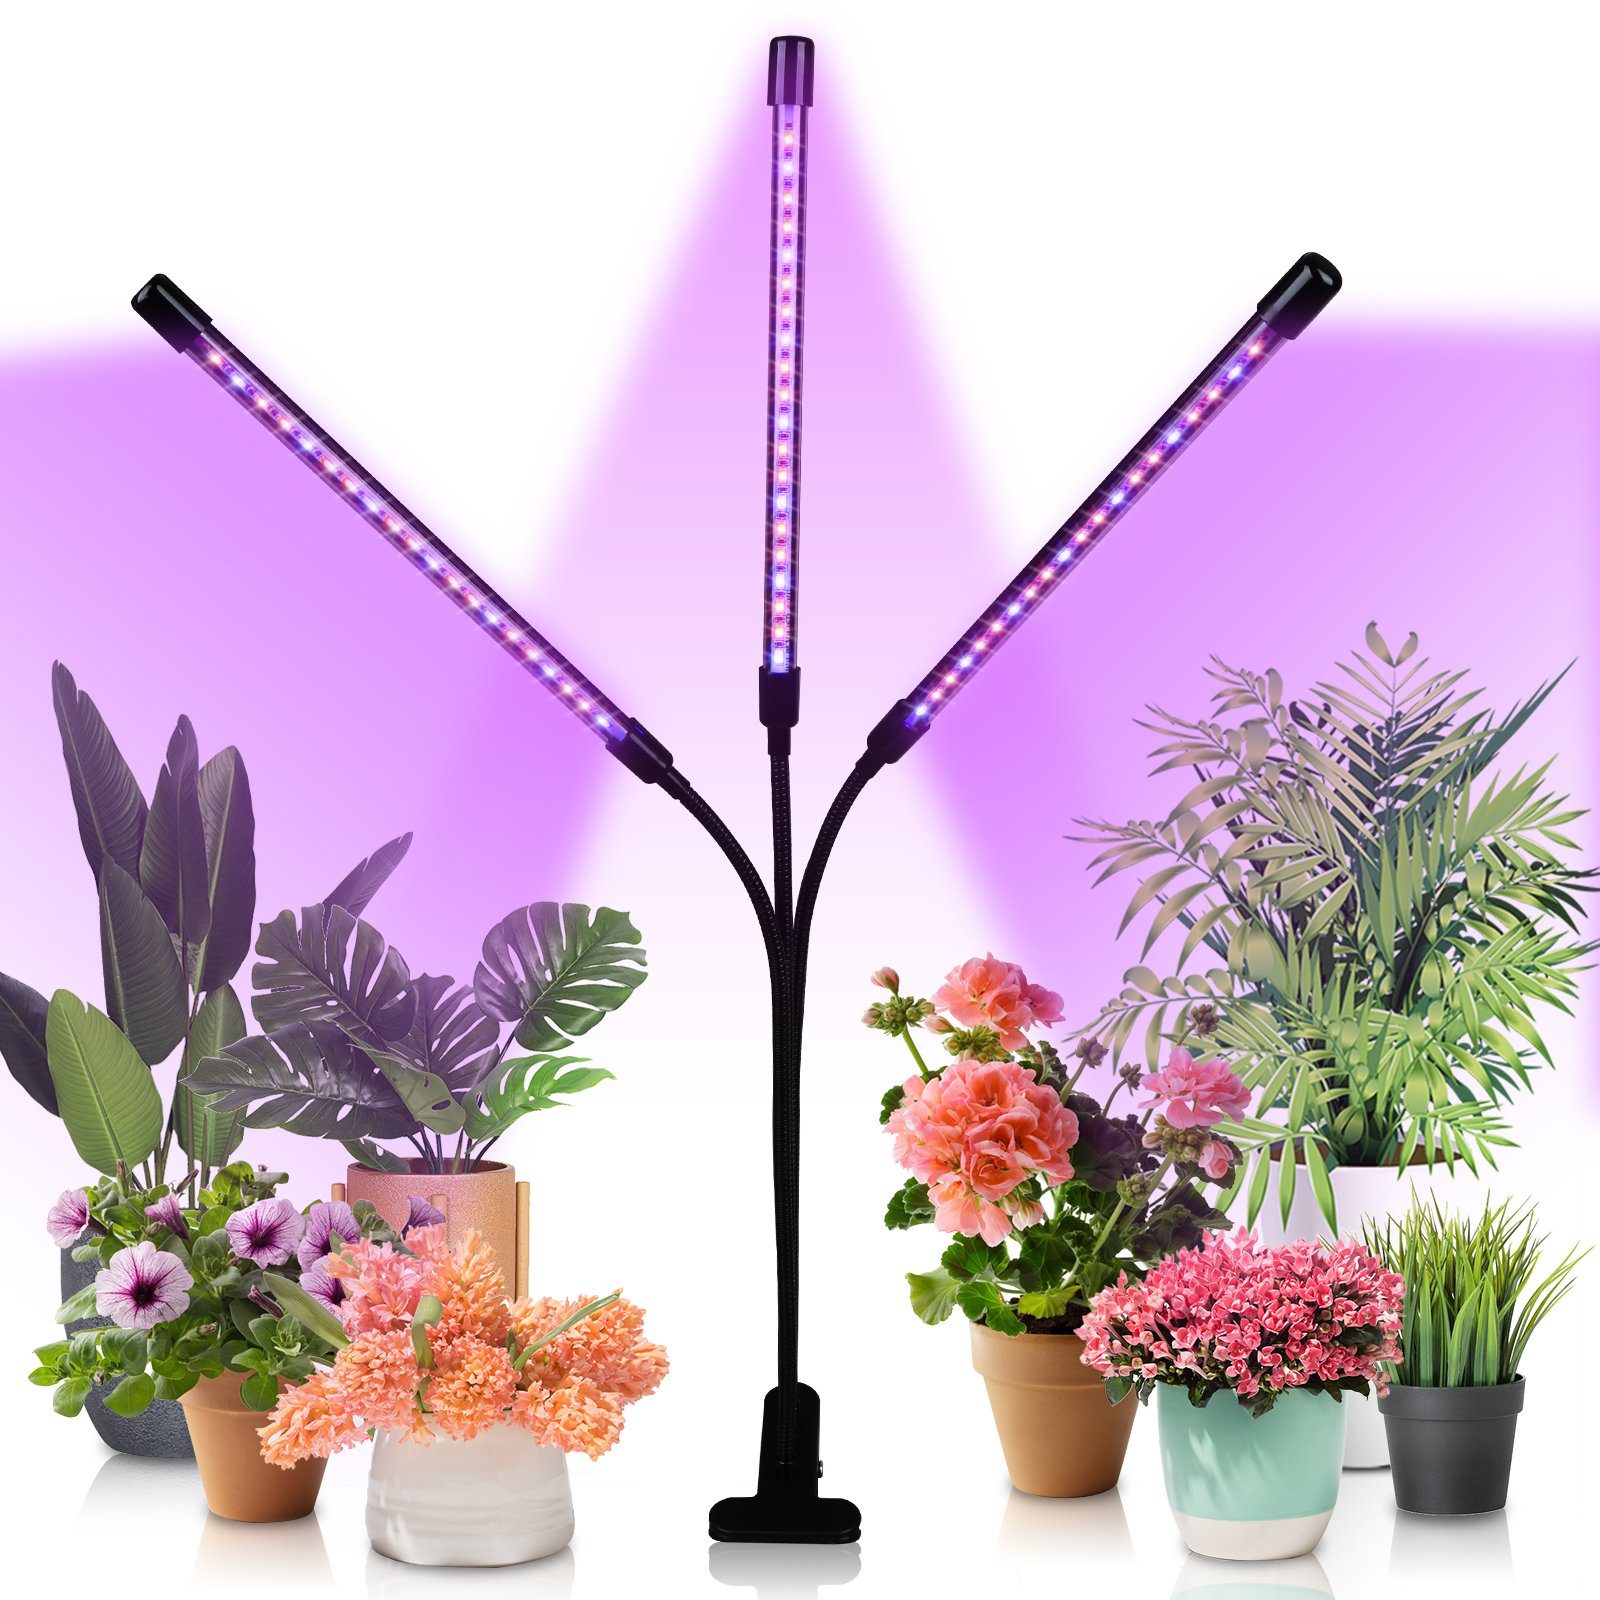 Lospitch Pflanzenlampe 3 Kopf LED Pflanzenlicht Vollspektrum Dimmbar 30W Wachstumslampe